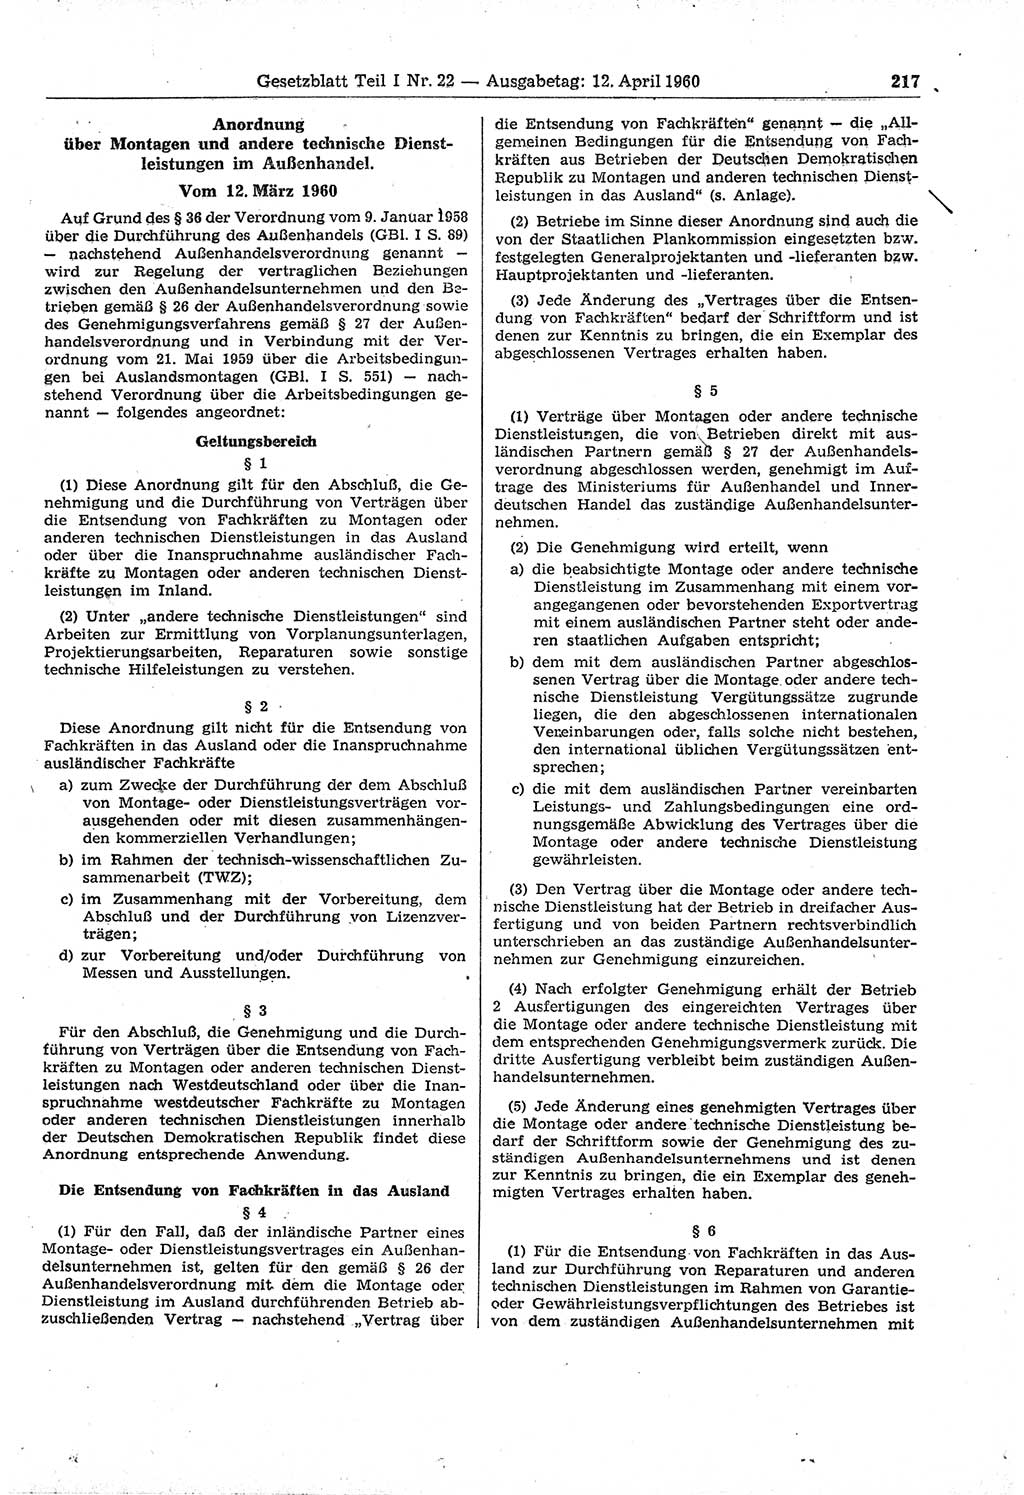 Gesetzblatt (GBl.) der Deutschen Demokratischen Republik (DDR) Teil Ⅰ 1960, Seite 217 (GBl. DDR Ⅰ 1960, S. 217)